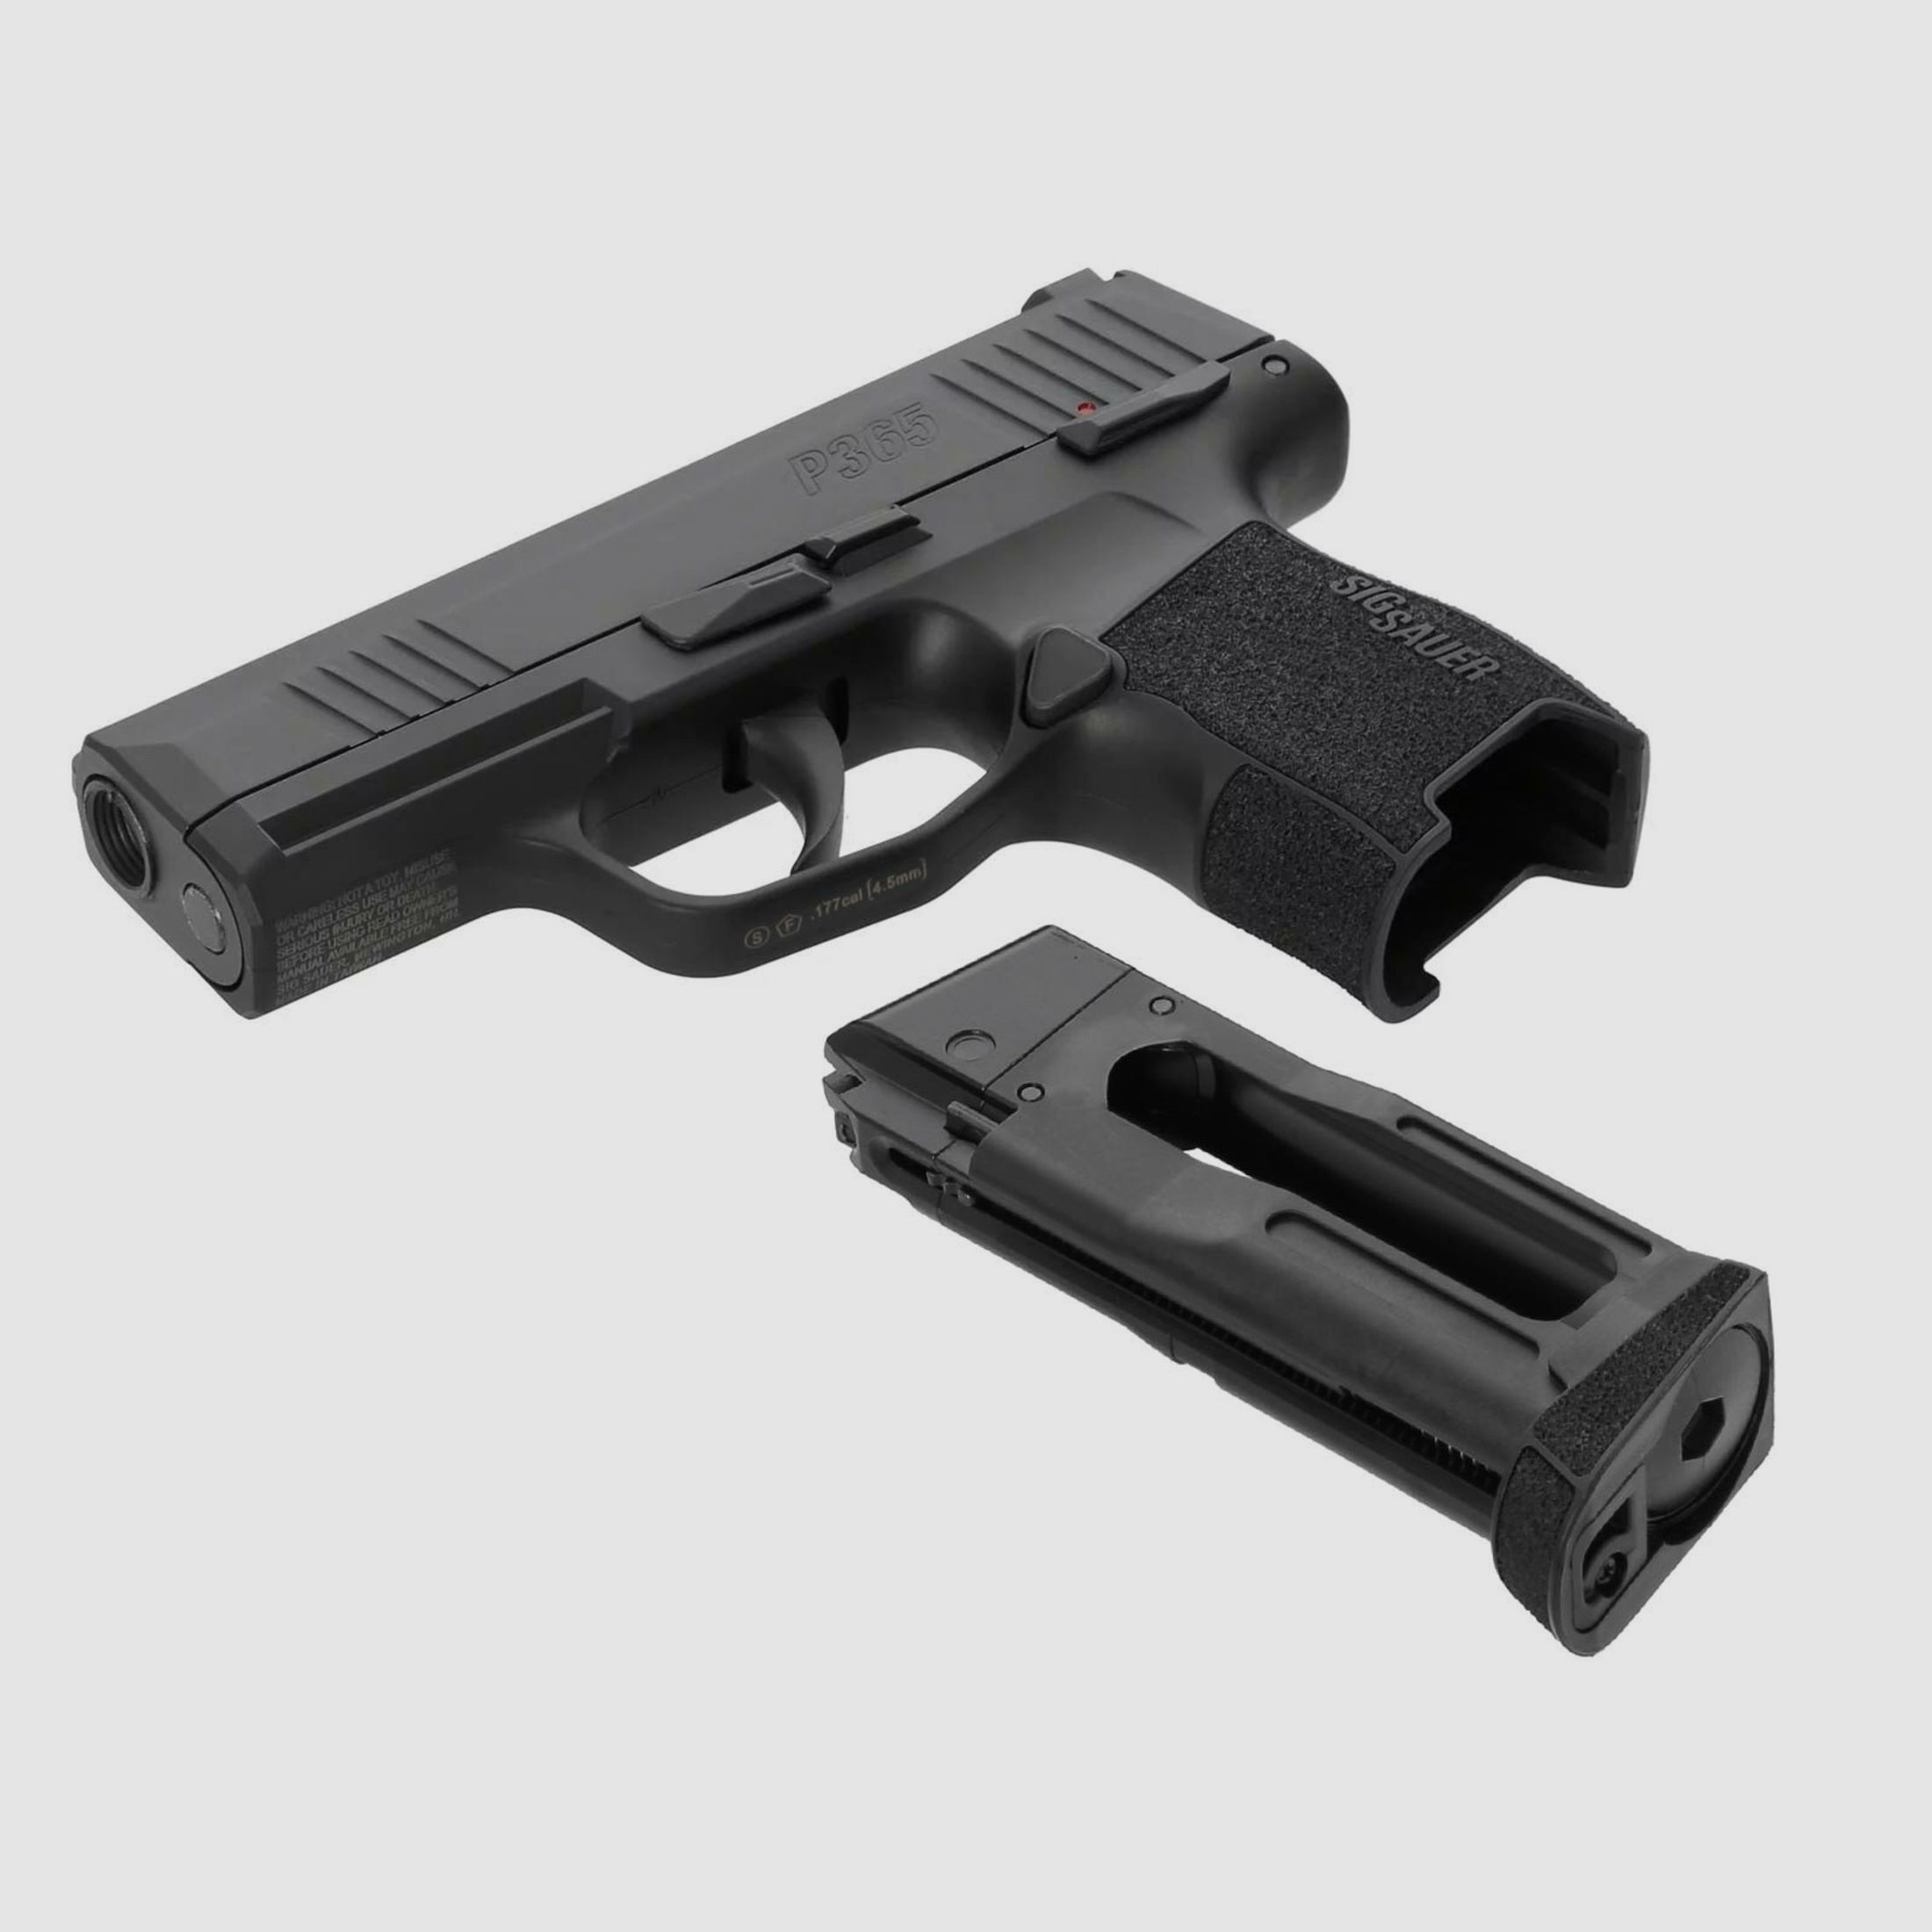 Kofferset SIG SAUER P365 4,5 mm BB Blowback Co2-Pistole (P18)